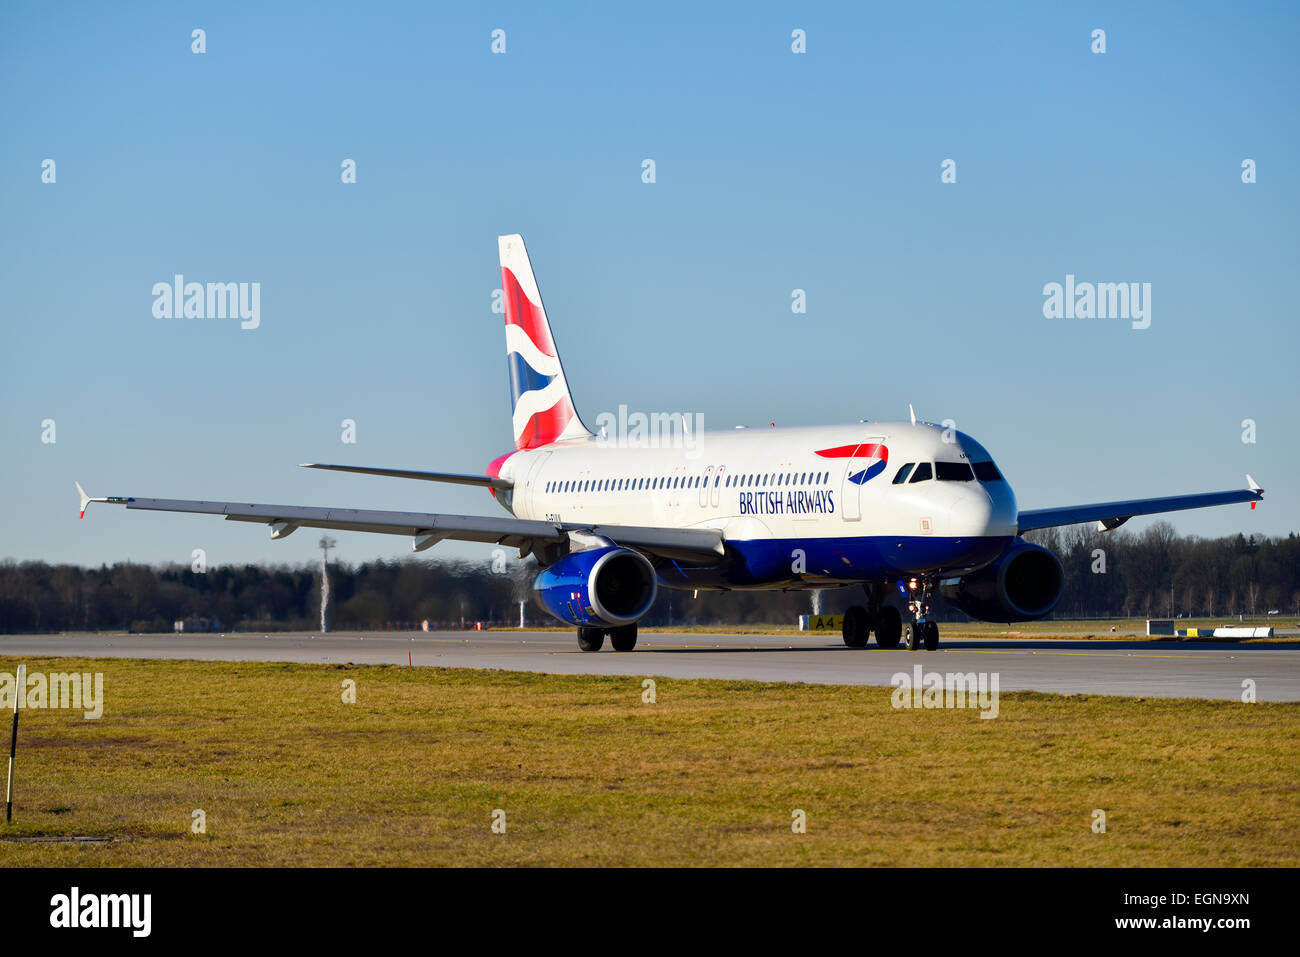 British Airways, pista di rullaggio, roll out, Foto Stock